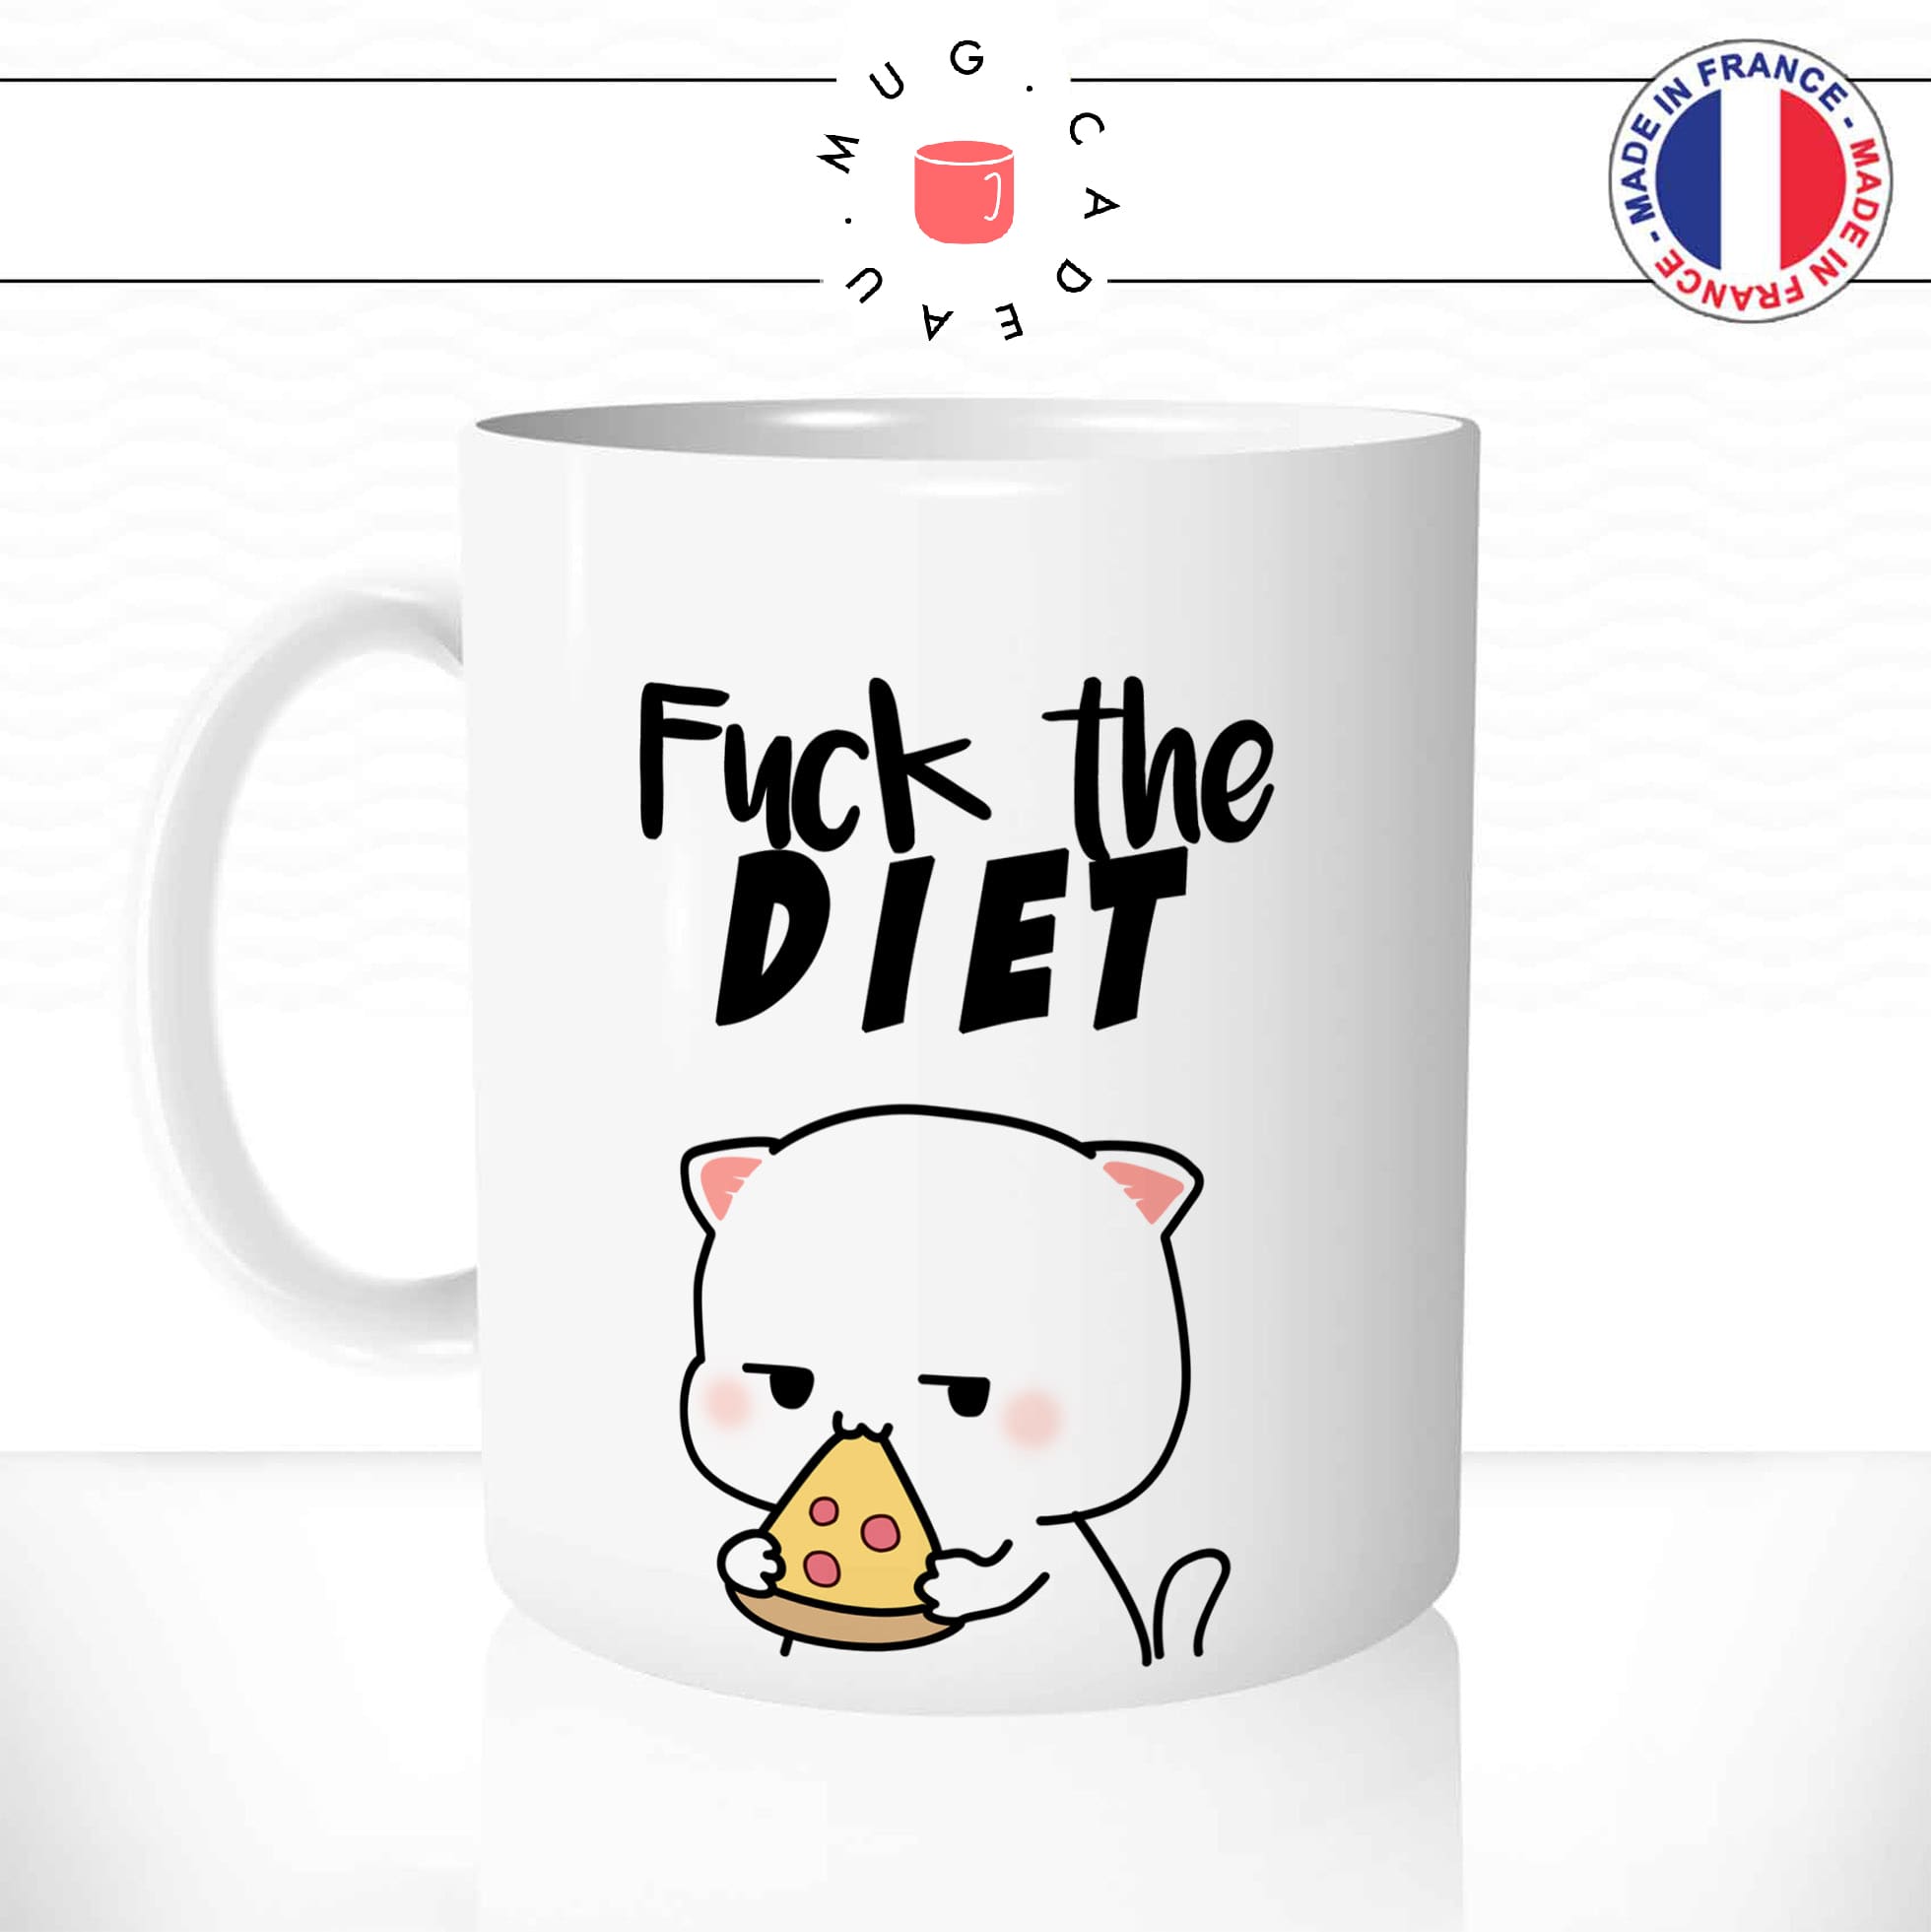 mug-tasse-chat-chaton-blanc-cat-souris-fuck-the-diet-regime-repas-pizza-drole-humour-idee-cadeau-cool-fun-original-personnalisé1